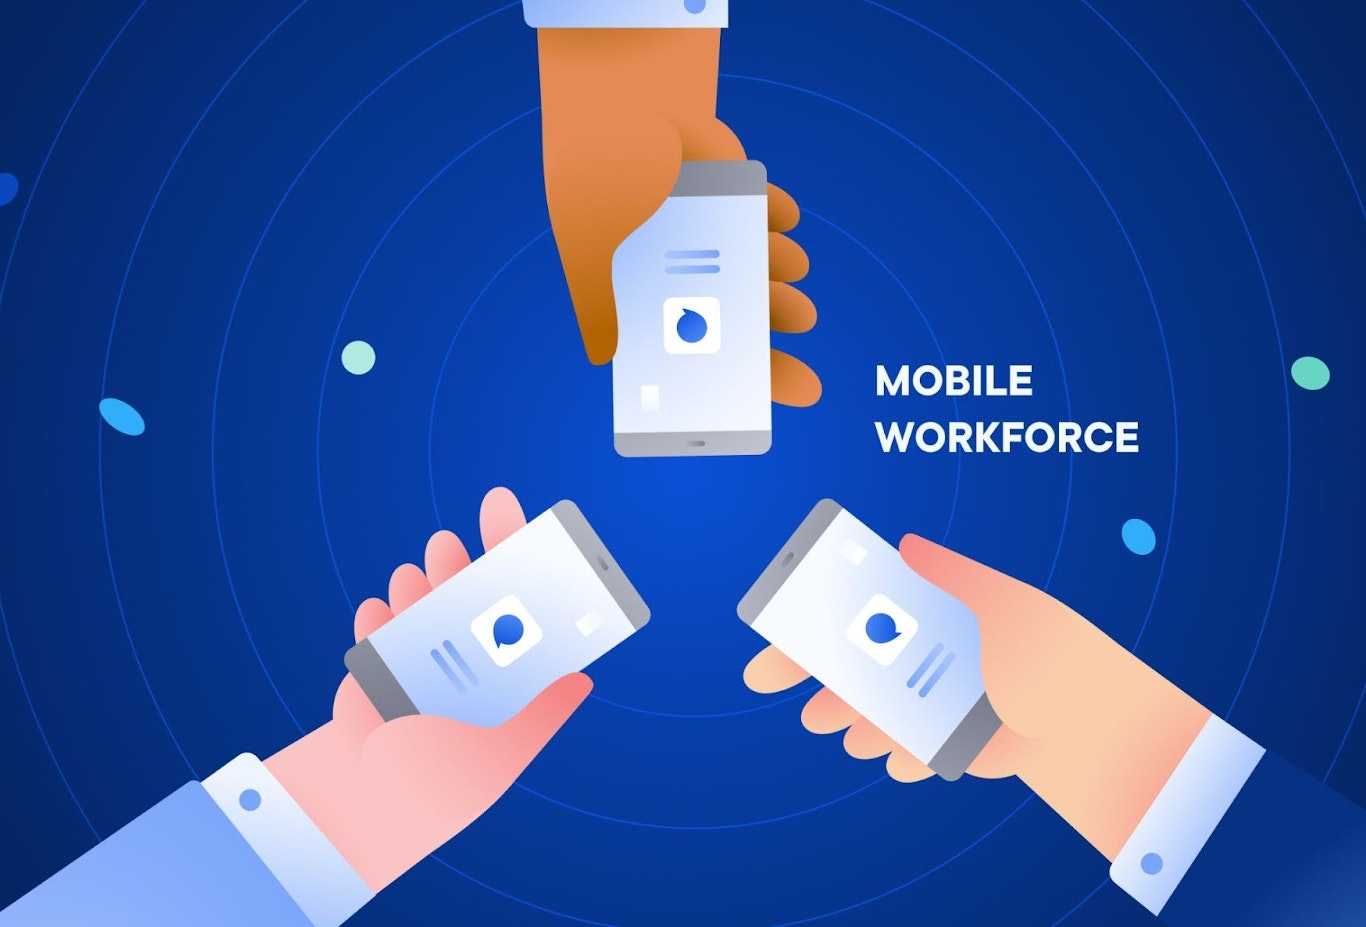 Mobile workforce management